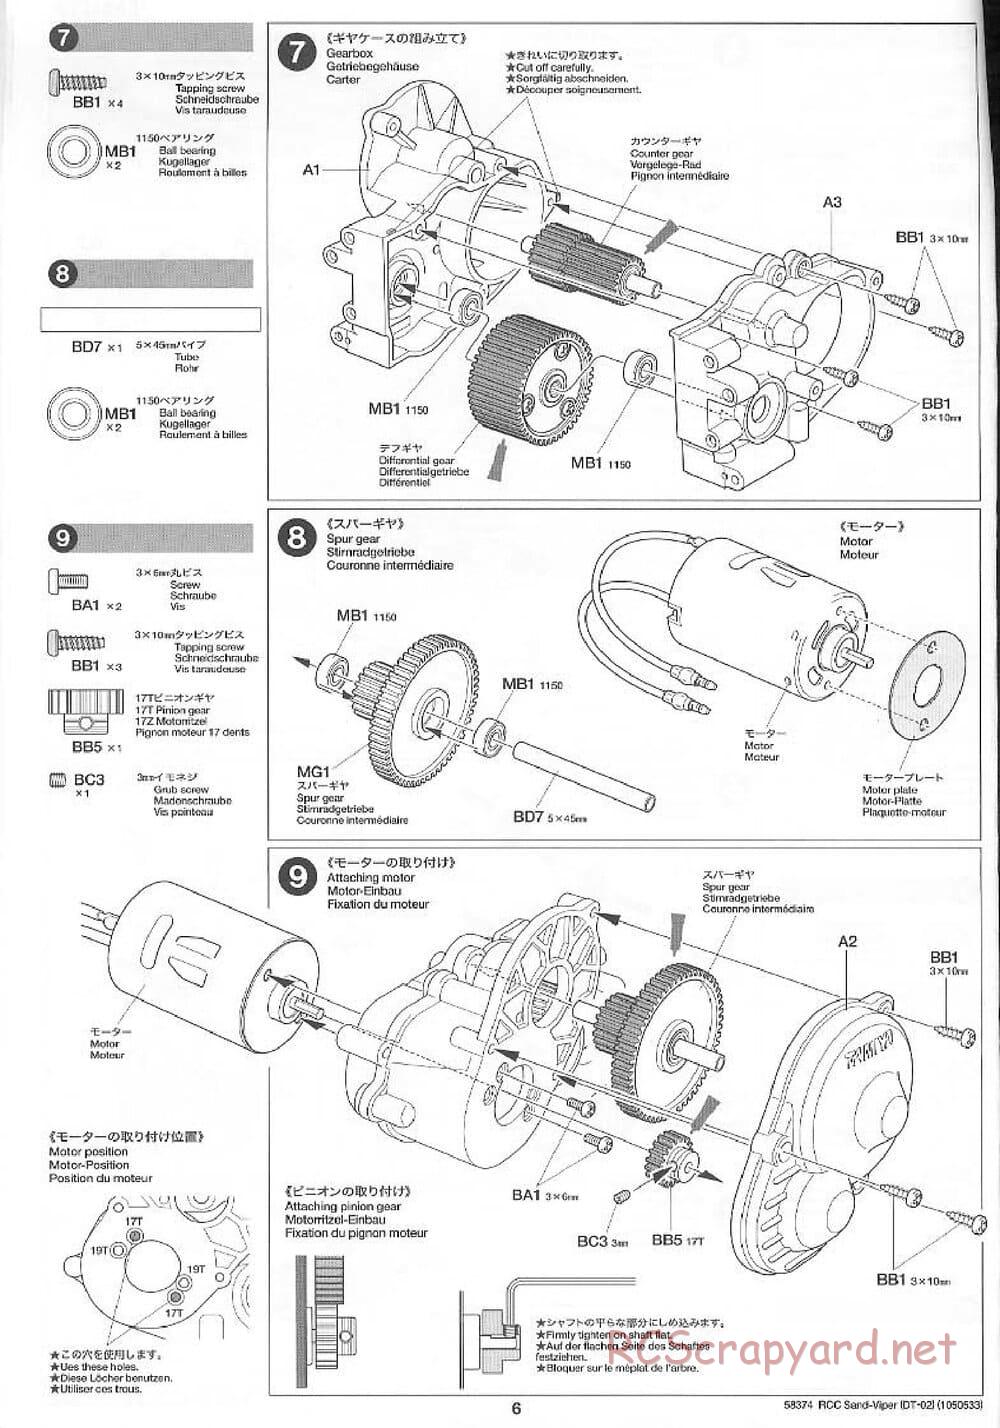 Tamiya - Sand Viper Chassis - Manual - Page 6